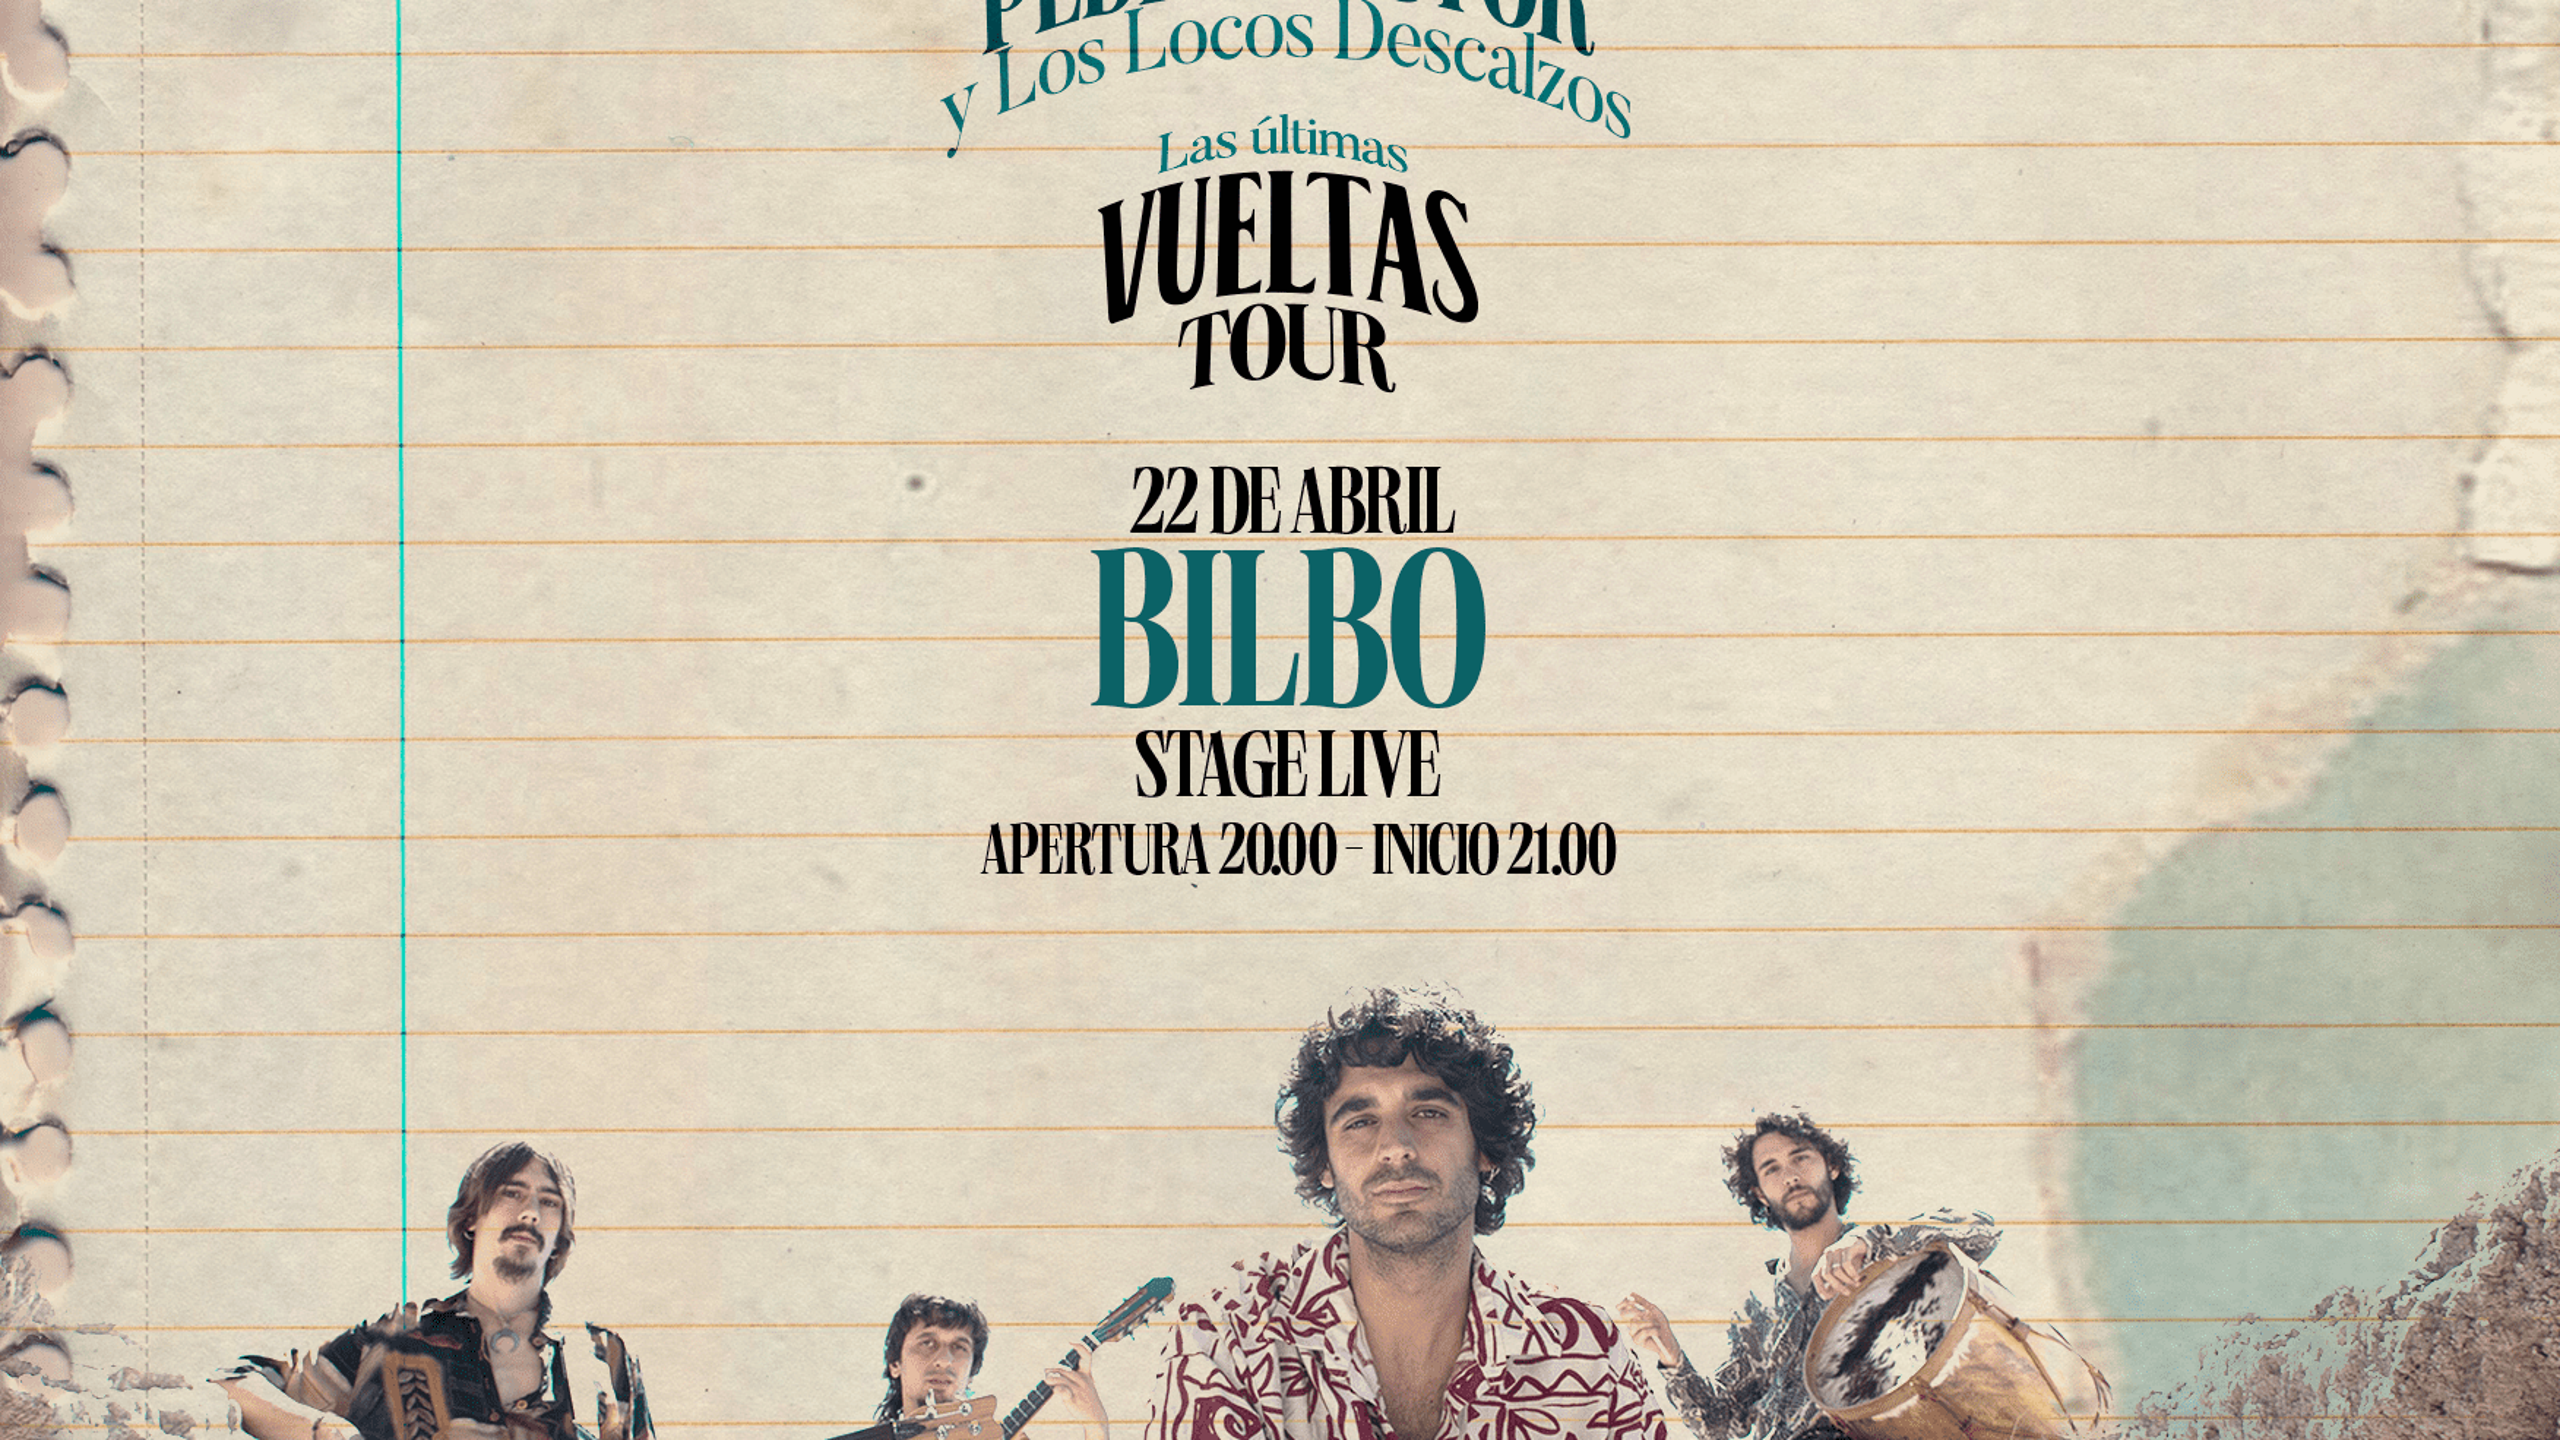 Fotografía promocional de Pedro Pastor Bilbao ''Las Últimas Vueltas'' Tour